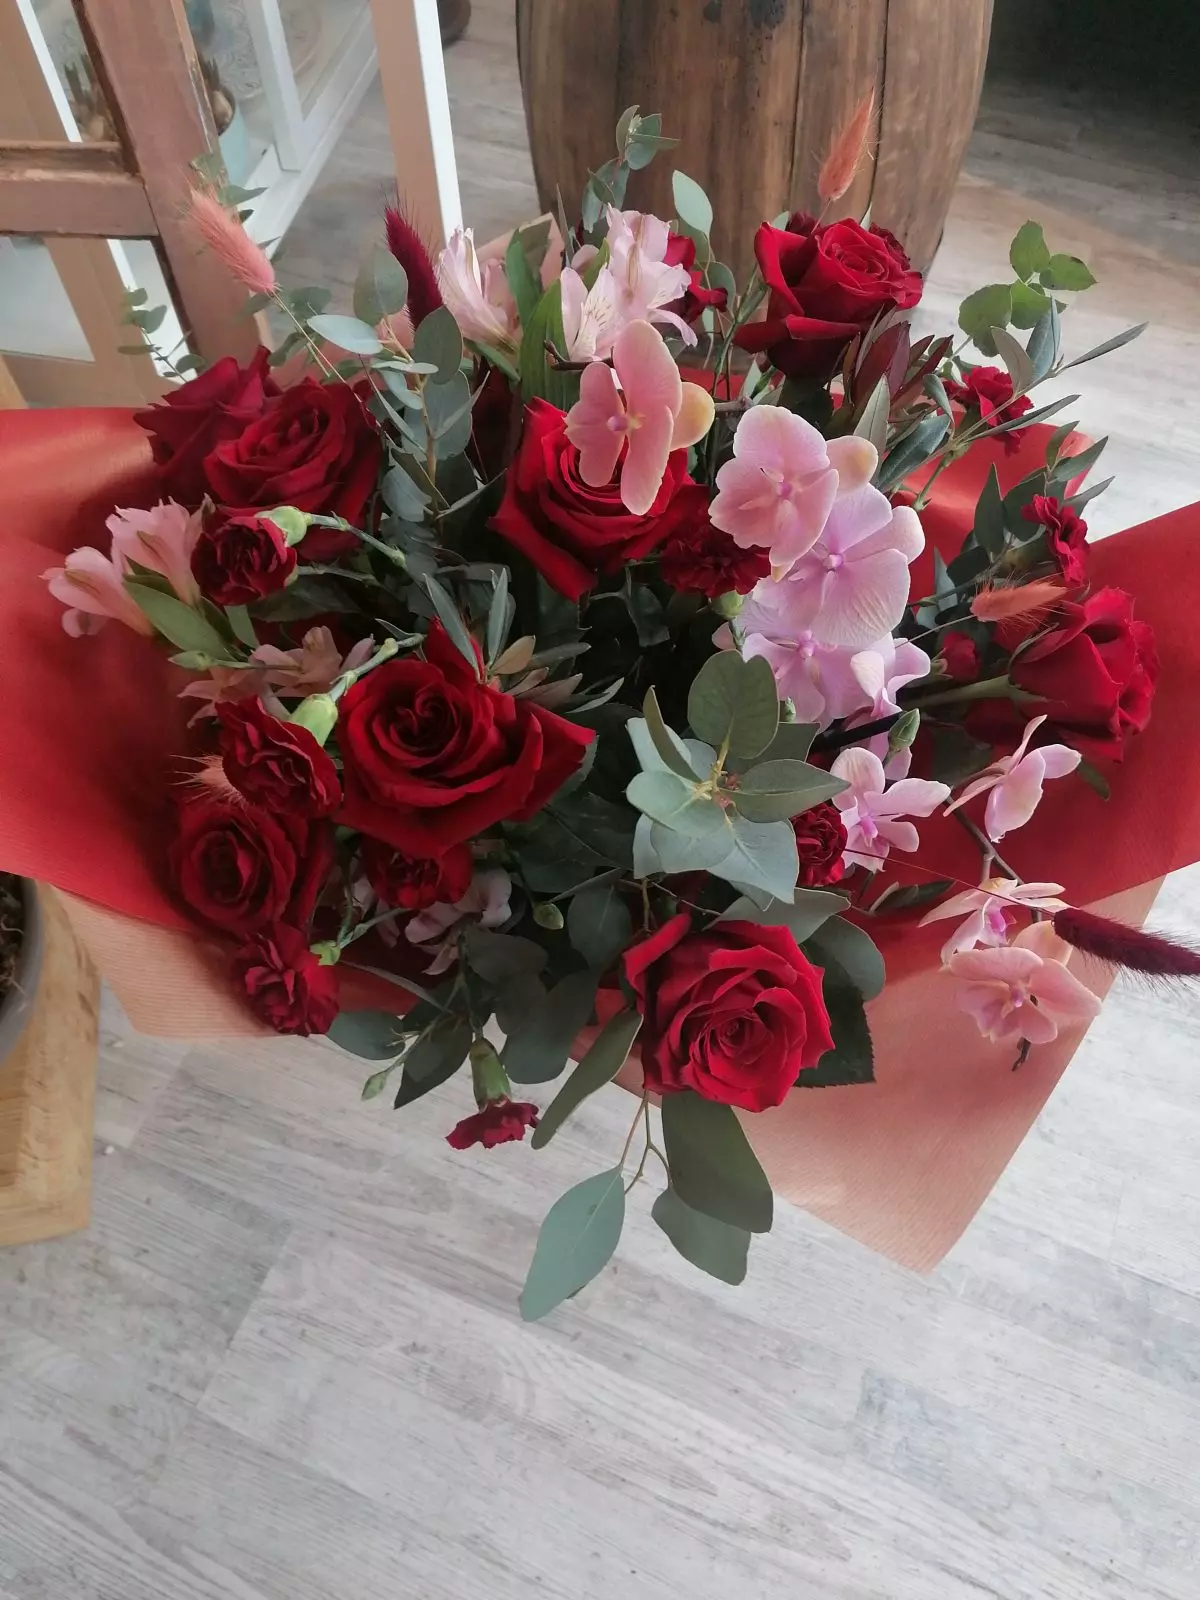 Szlachetne czerwone róże, storczyki Phalaenopsis oraz pudrowo różowe akcenty kolorystyczne, to nowoczesne wydanie bukietu. Klasa sama w sobie!